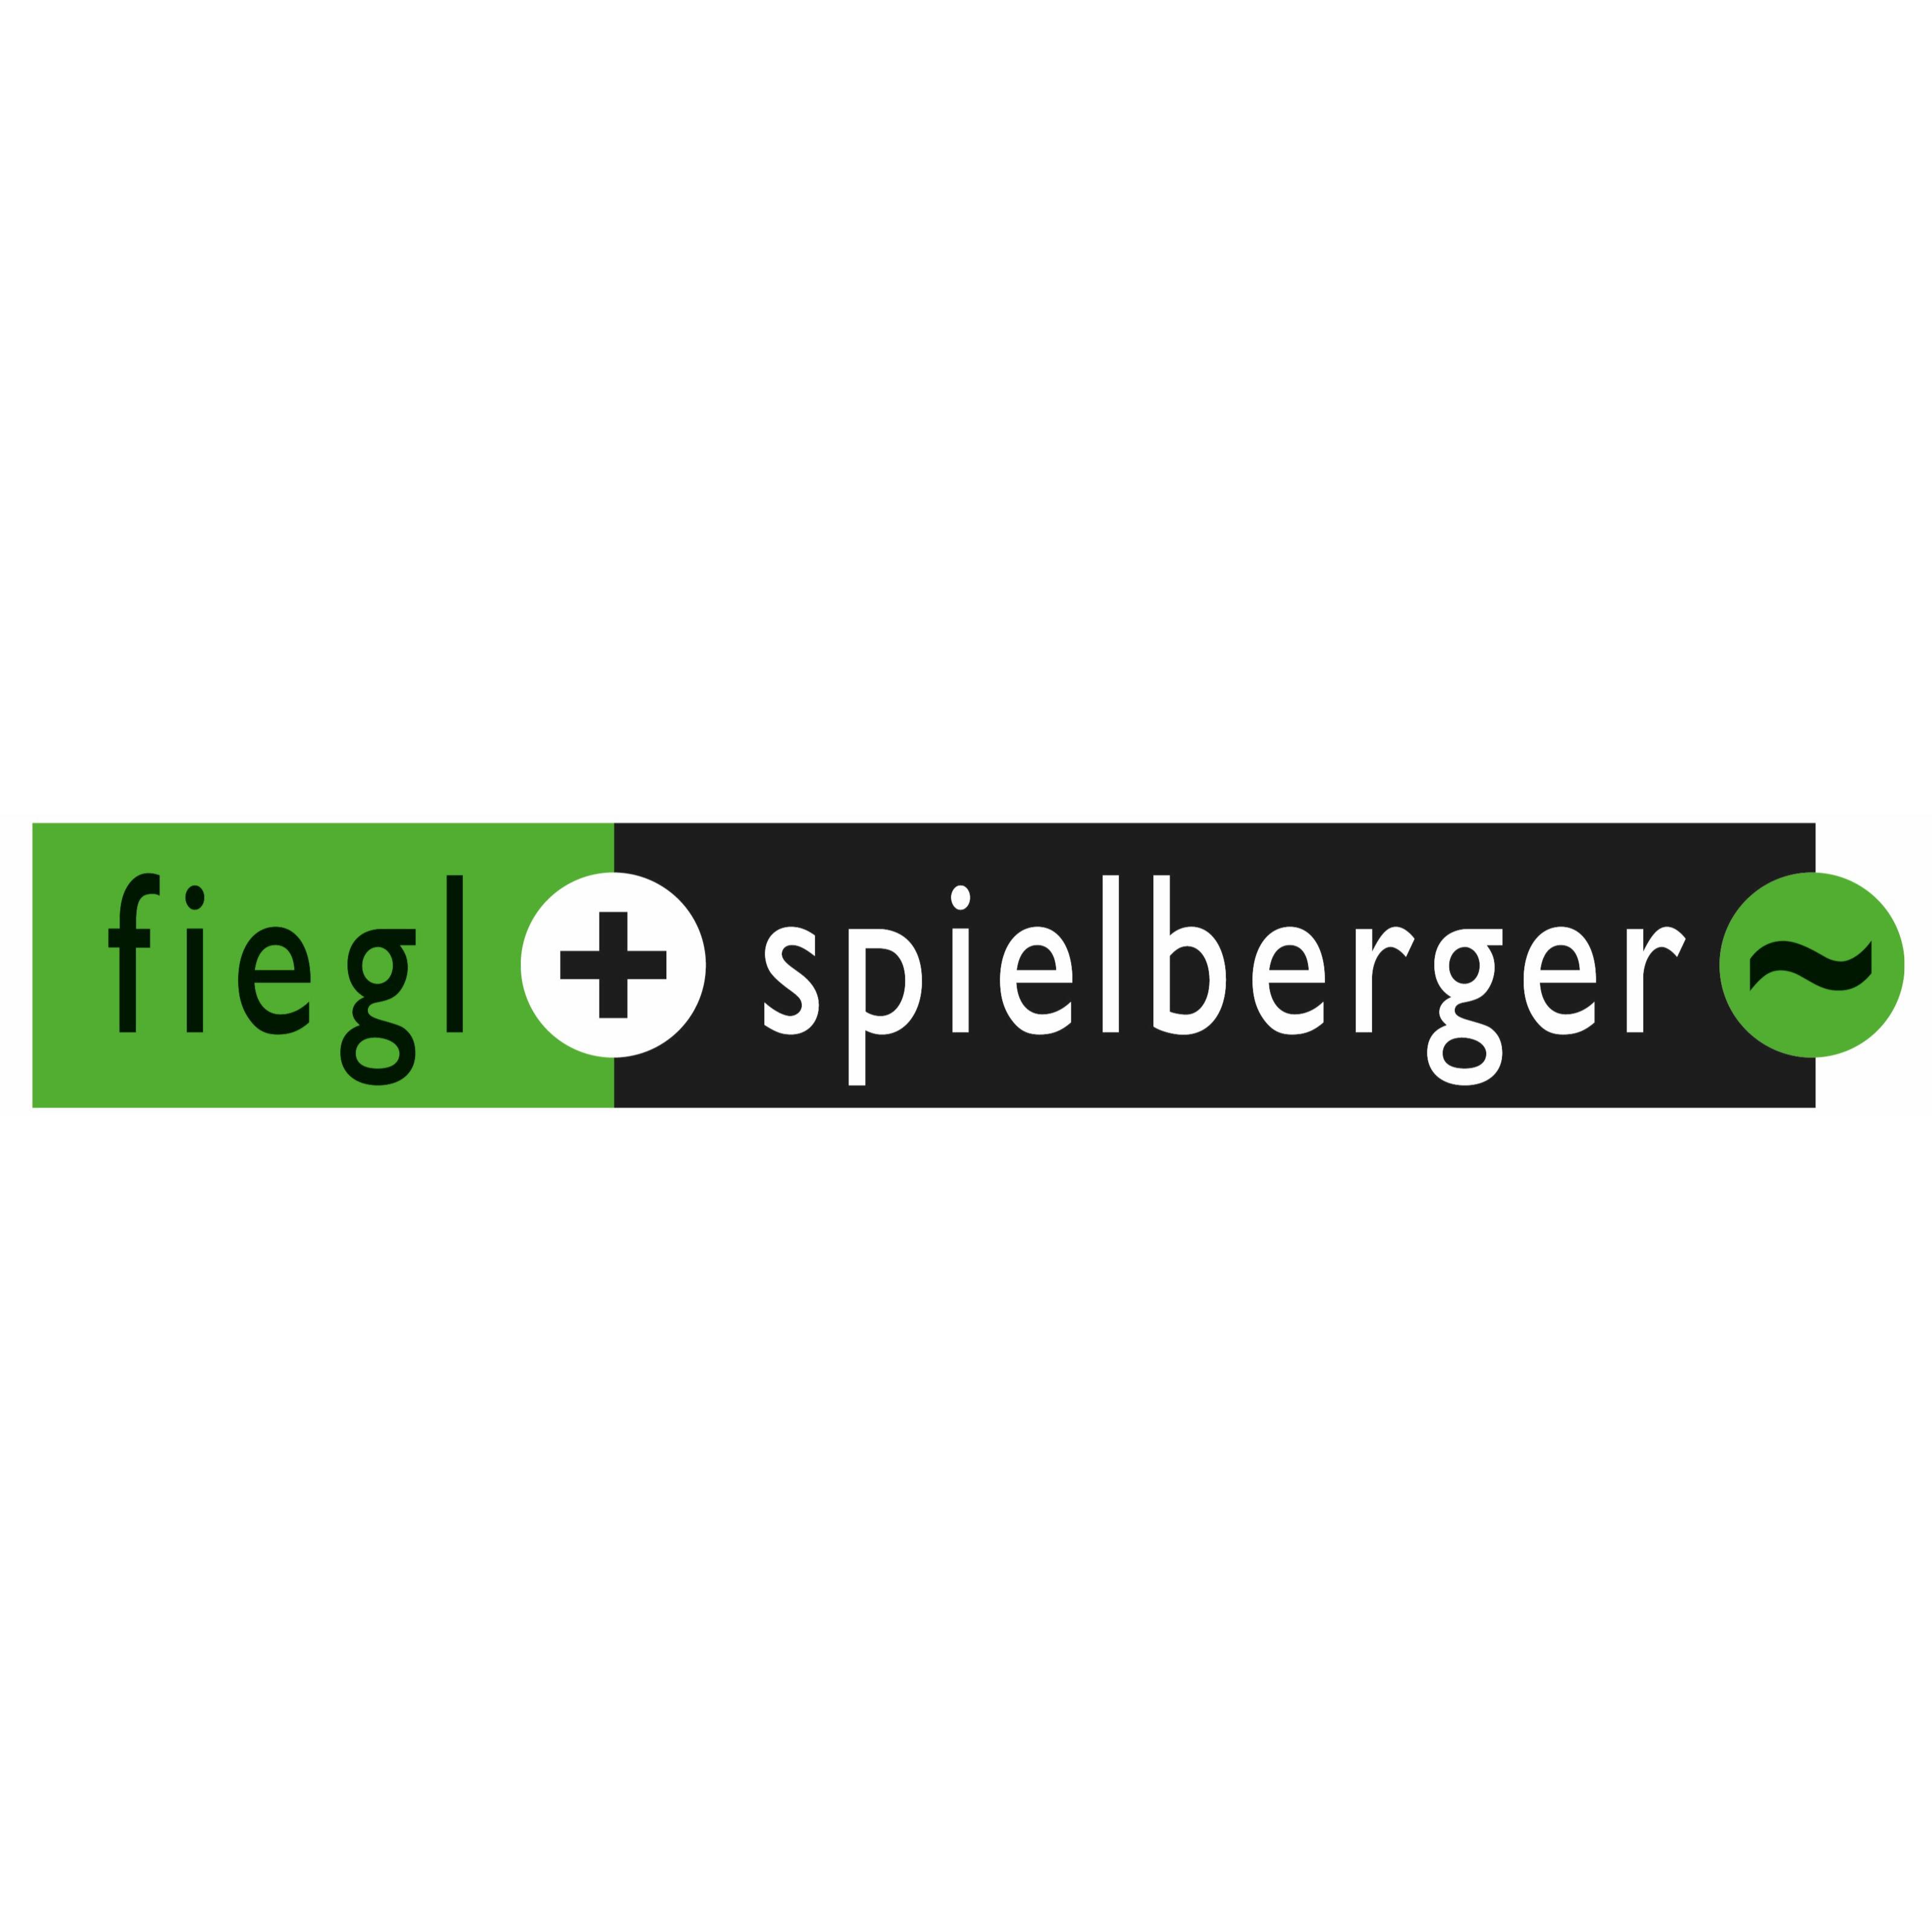 Fiegl & Spielberger GmbH Logo